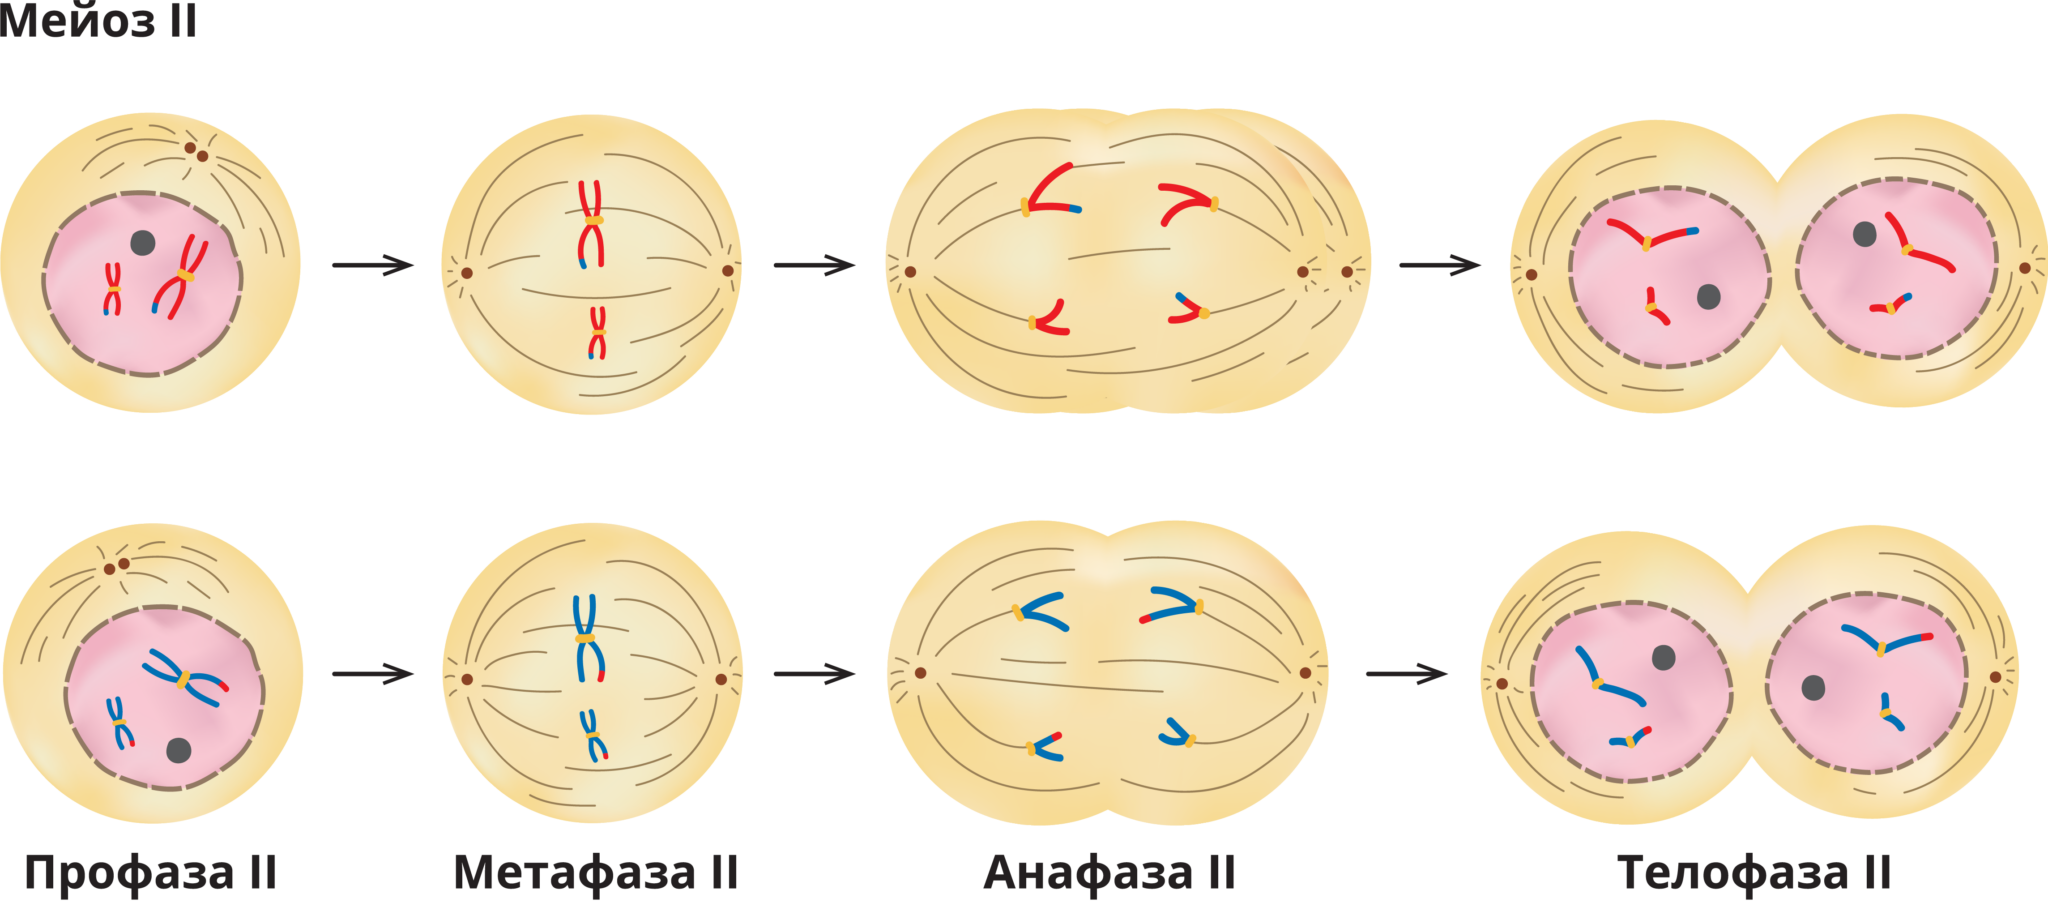 Второй фазой деления клетки. Первое деление мейоза набор хромосом. Интерфаза мейоза 2. Профаза 1 набор хромосом. Профаза 1 и профаза 2.